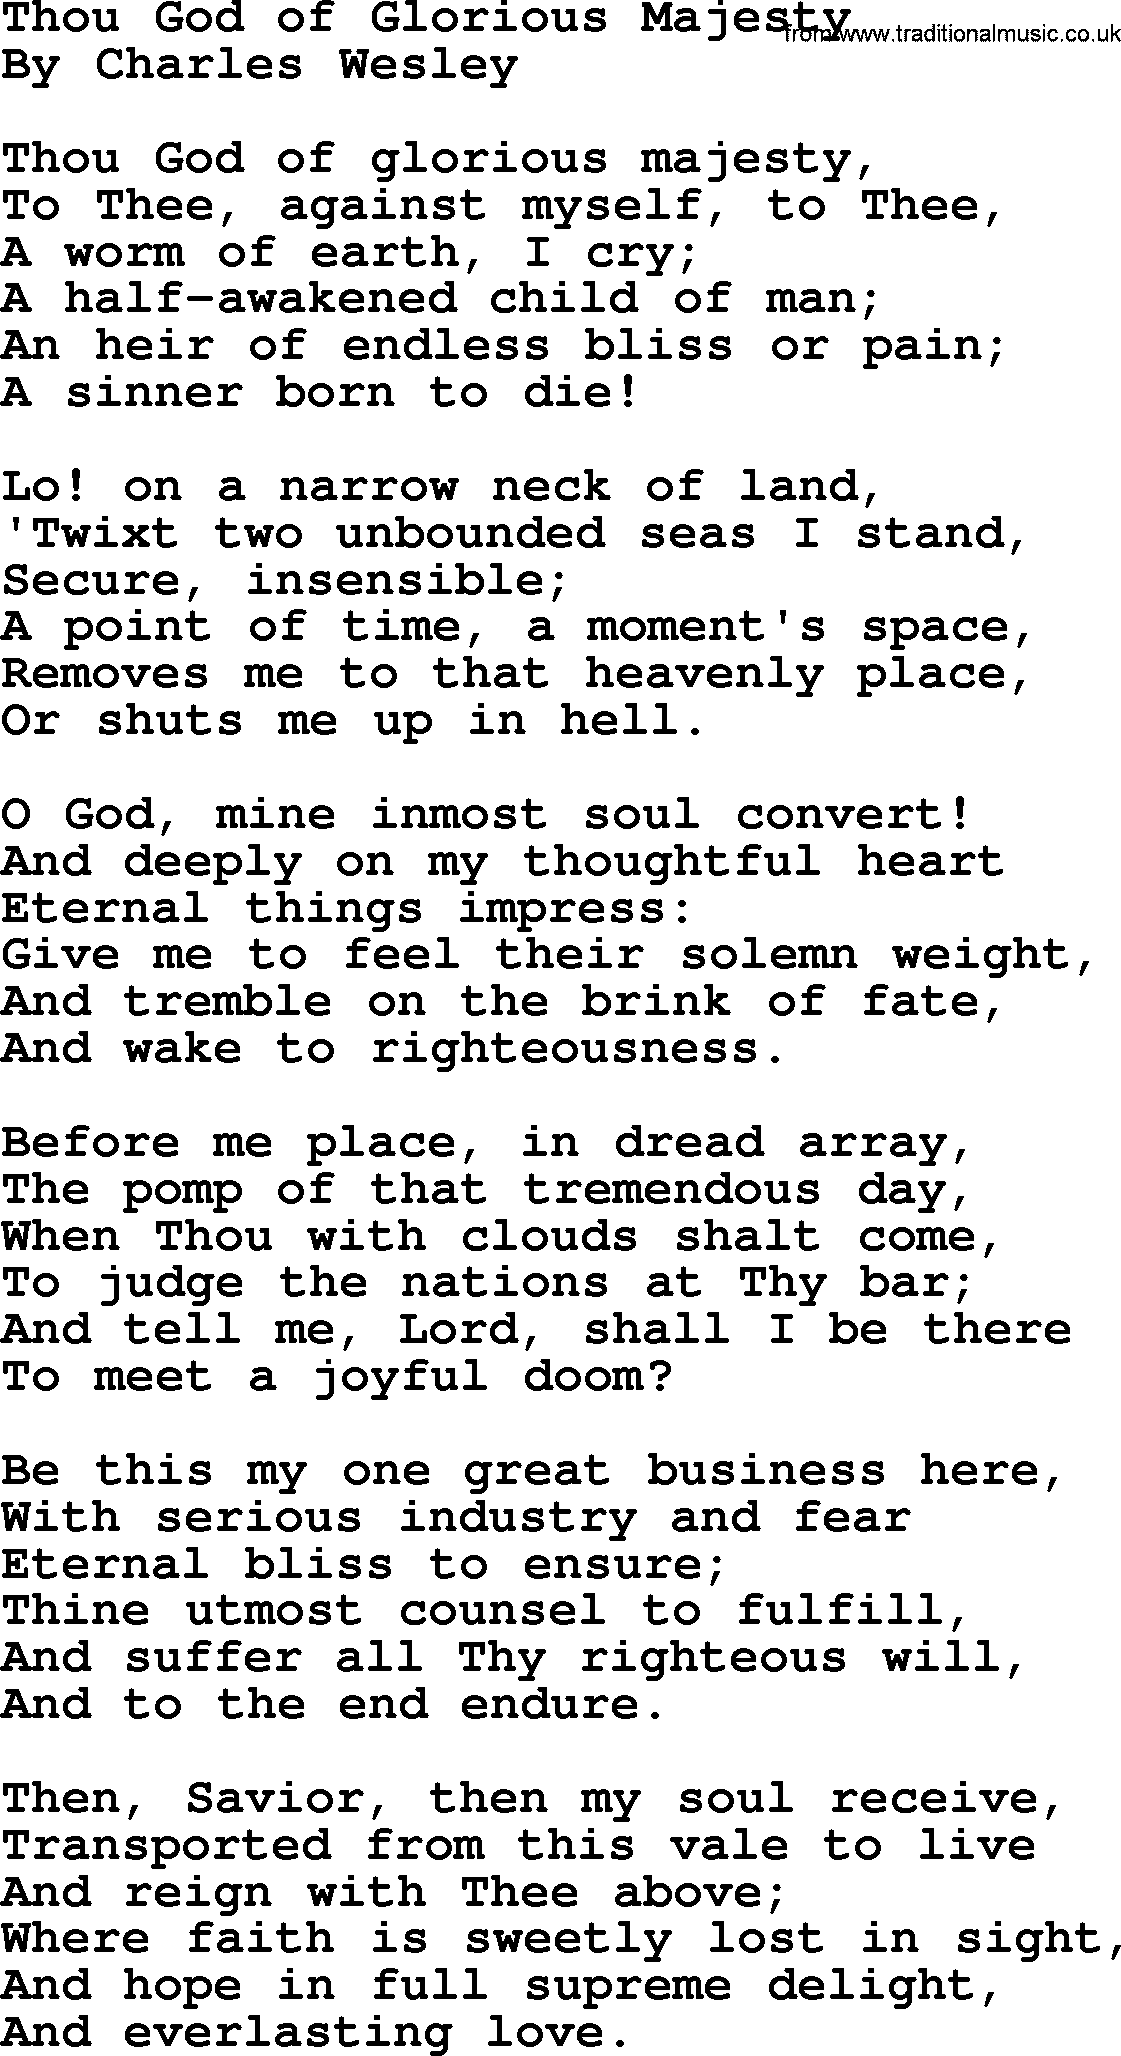 Charles Wesley hymn: Thou God Of Glorious Majesty, lyrics